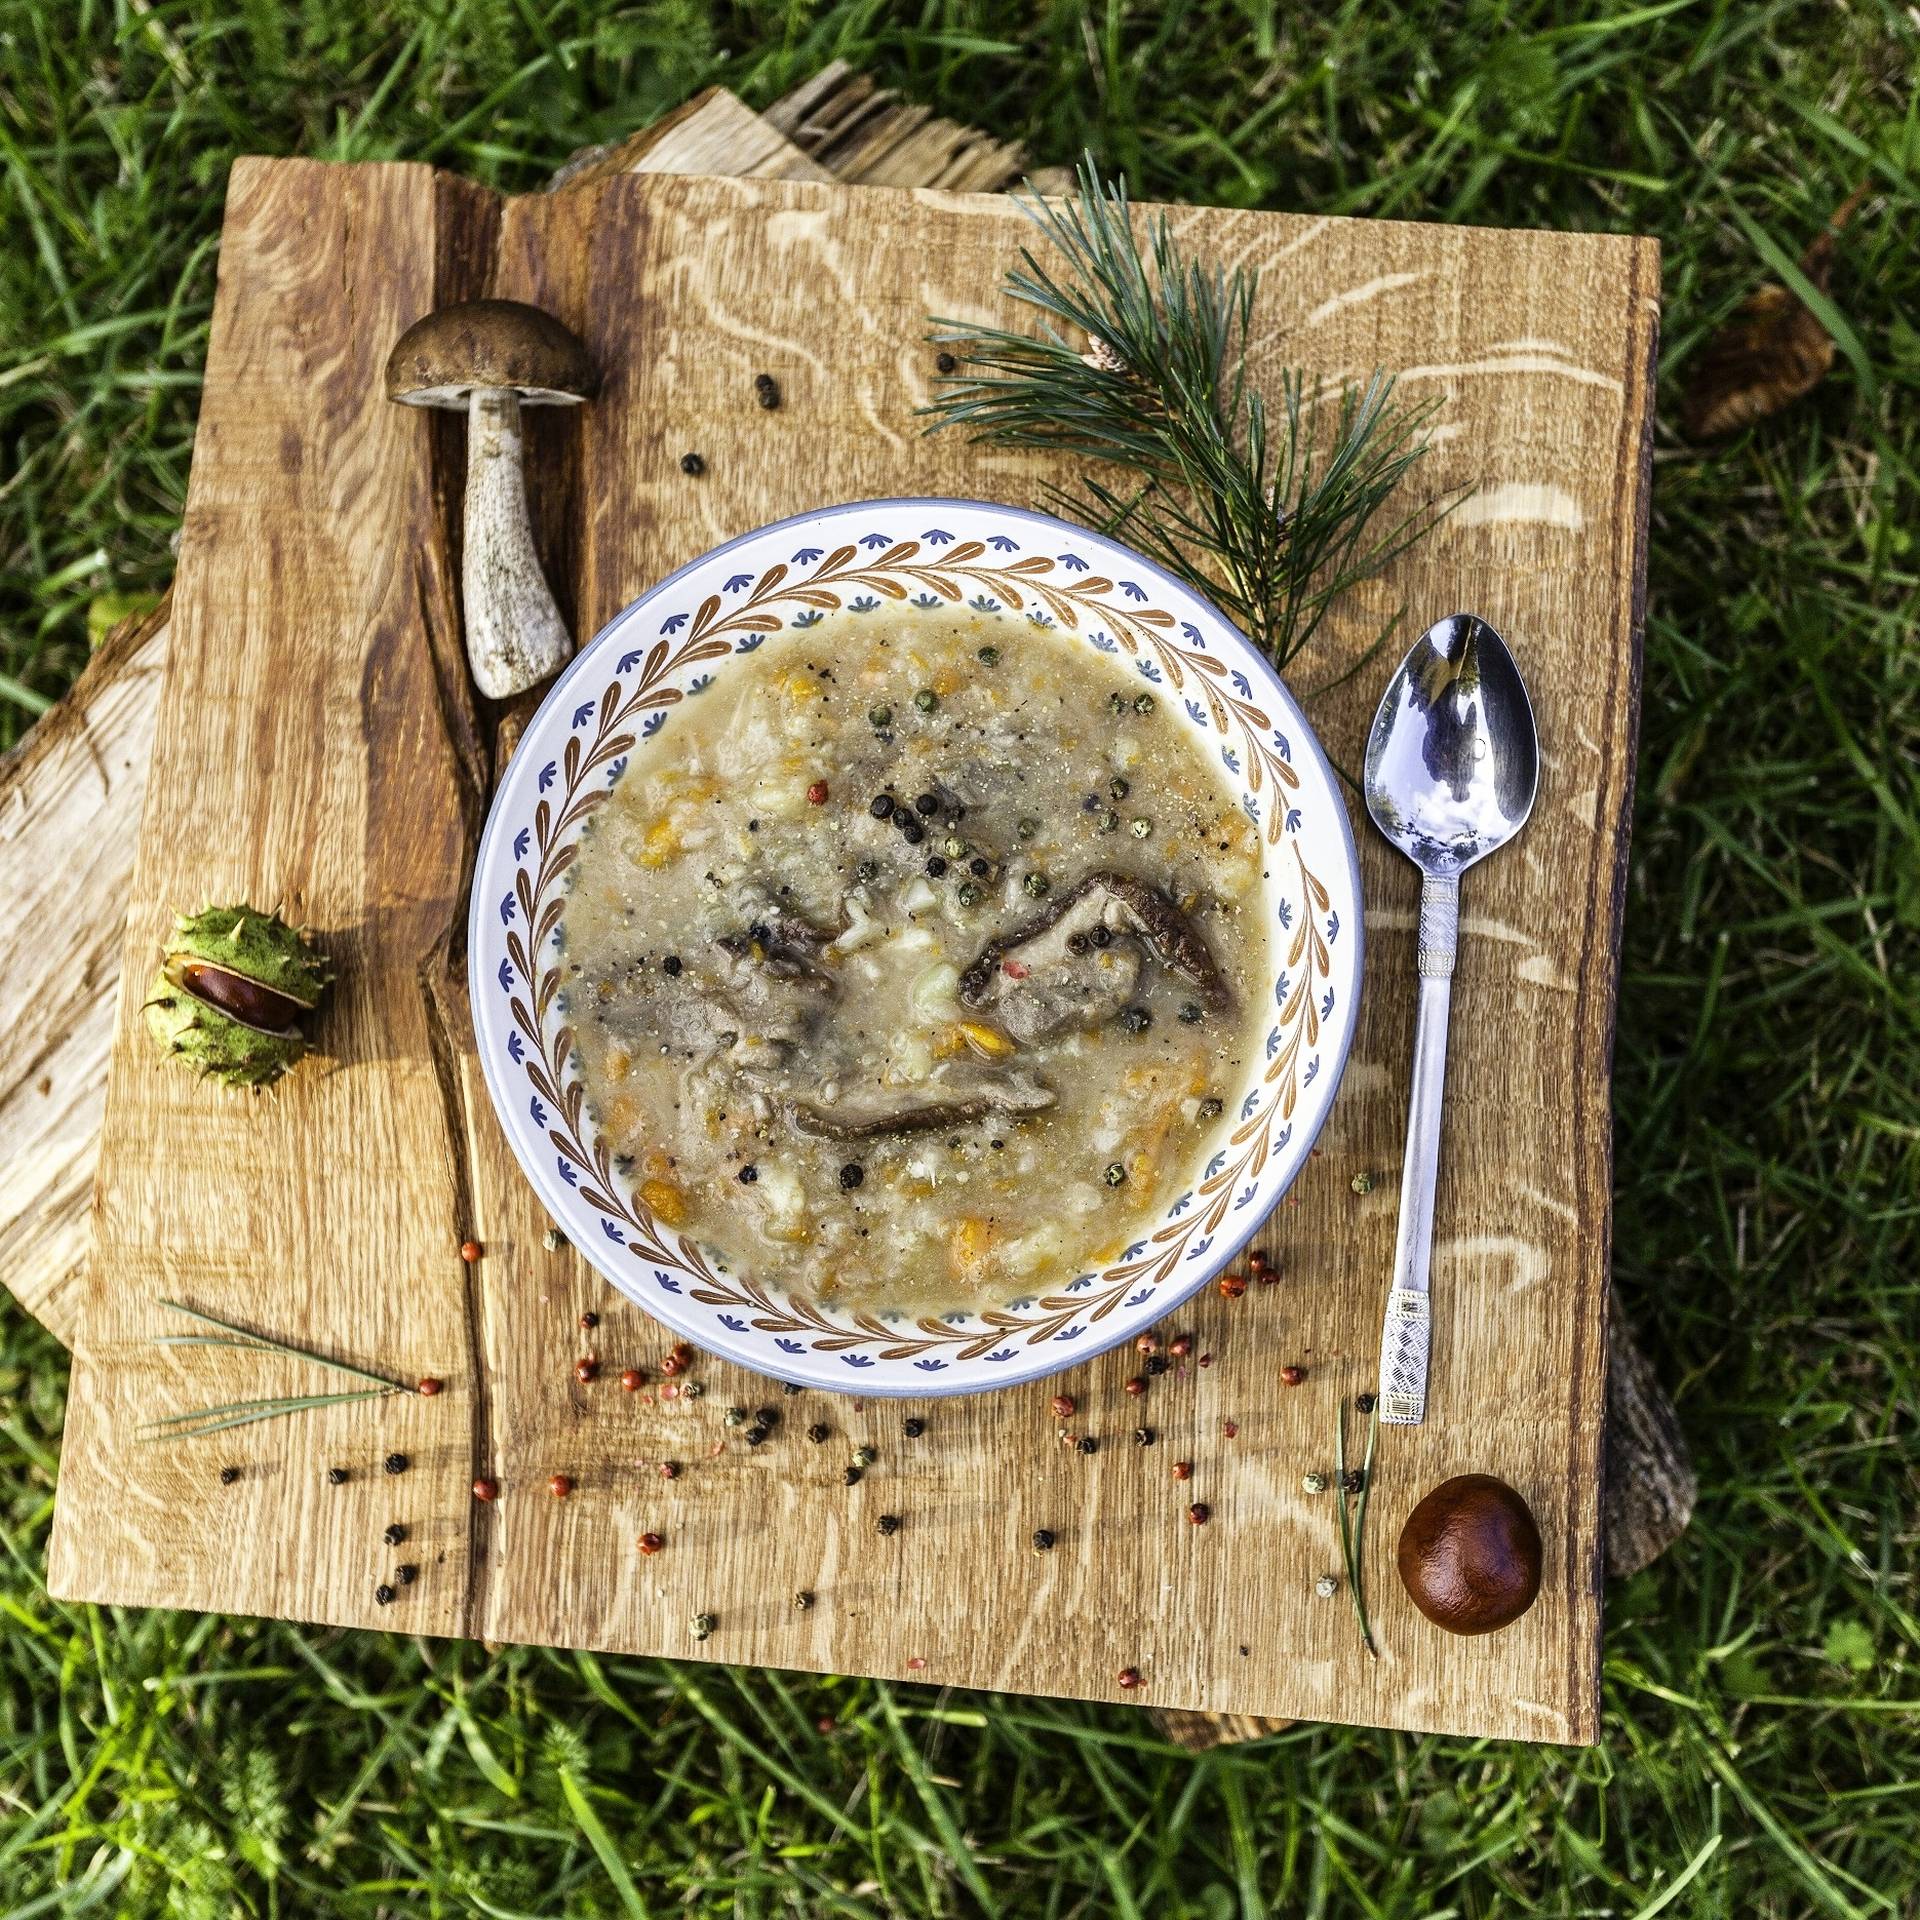 Leśna zupa grzybowa z ziemniakami, rozmarynem i igiełkami sosny. Przepisy z grzybami Agnieszki Żelazko.